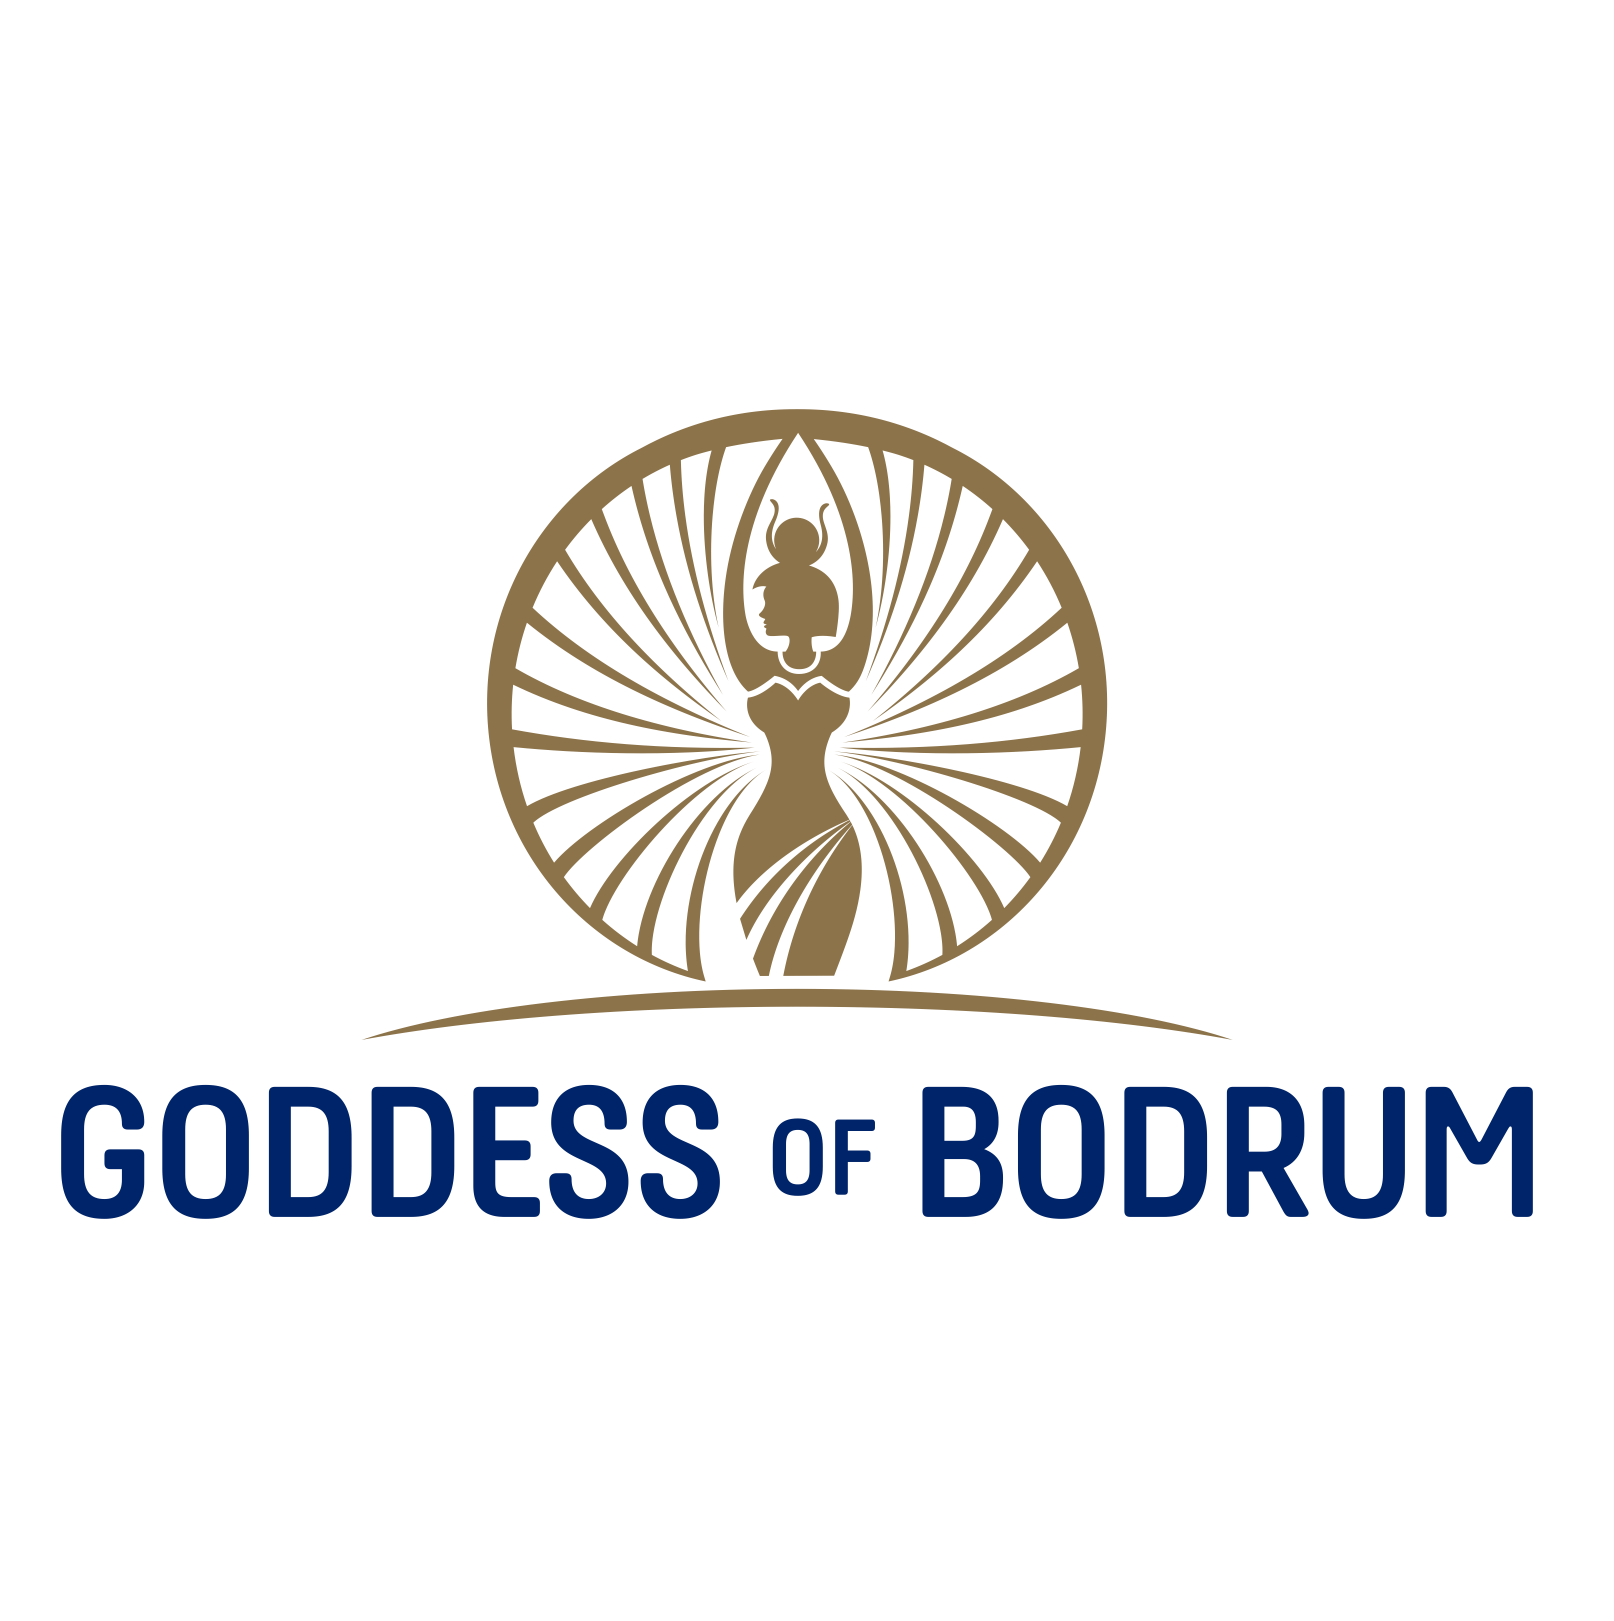 GODDES OF BODRUM